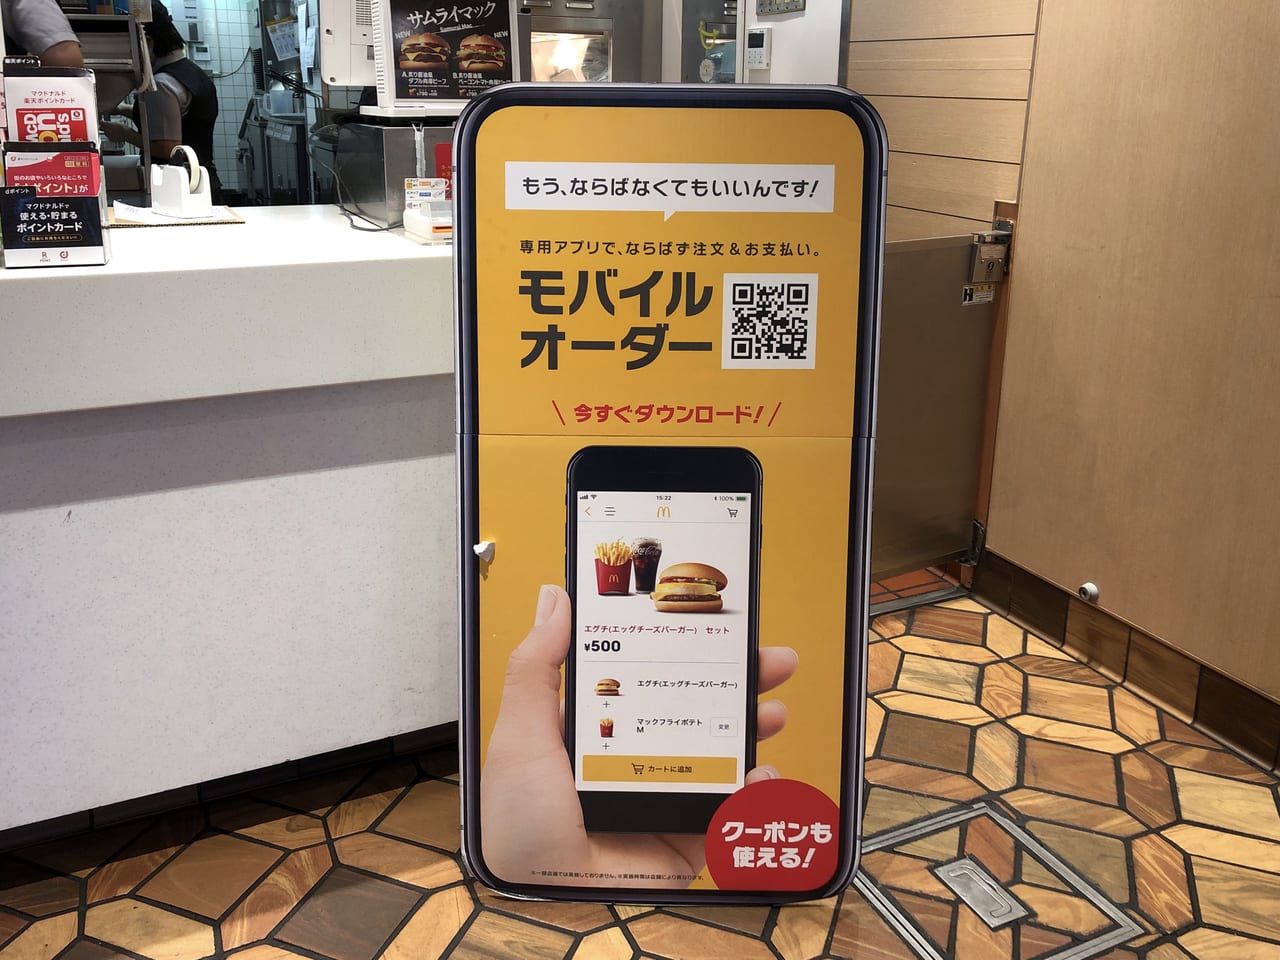 藤沢市 マクドナルドが 店内での飲食を終日中止に テイクアウトするならモバイルオーダーが便利です 号外net 藤沢市